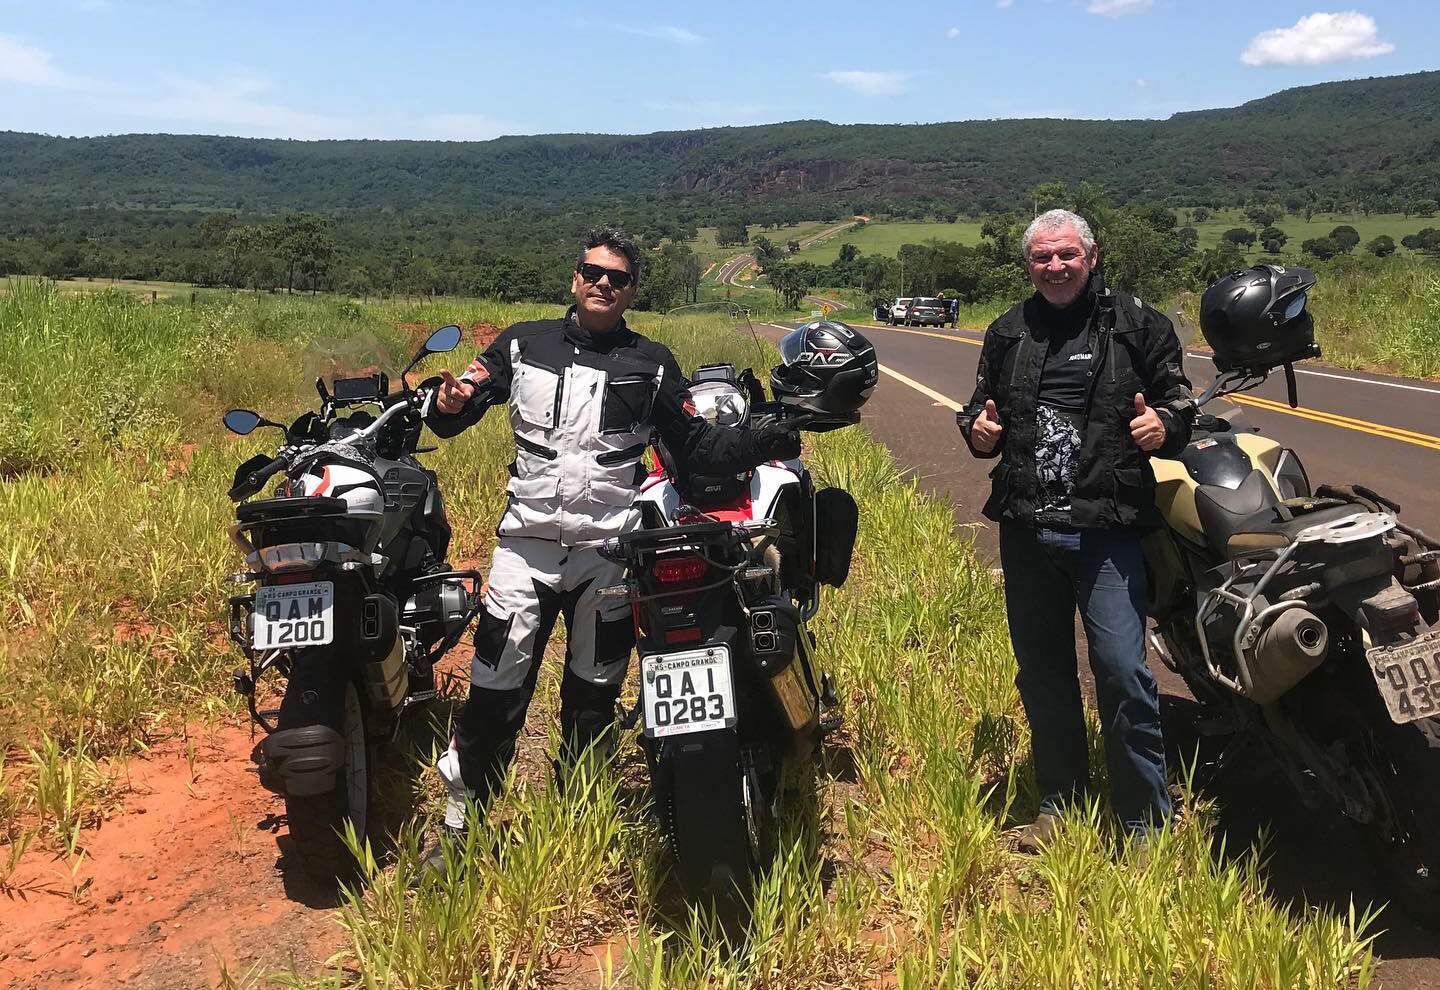 Campo-grandense conta como é viajar sozinho de moto pela América